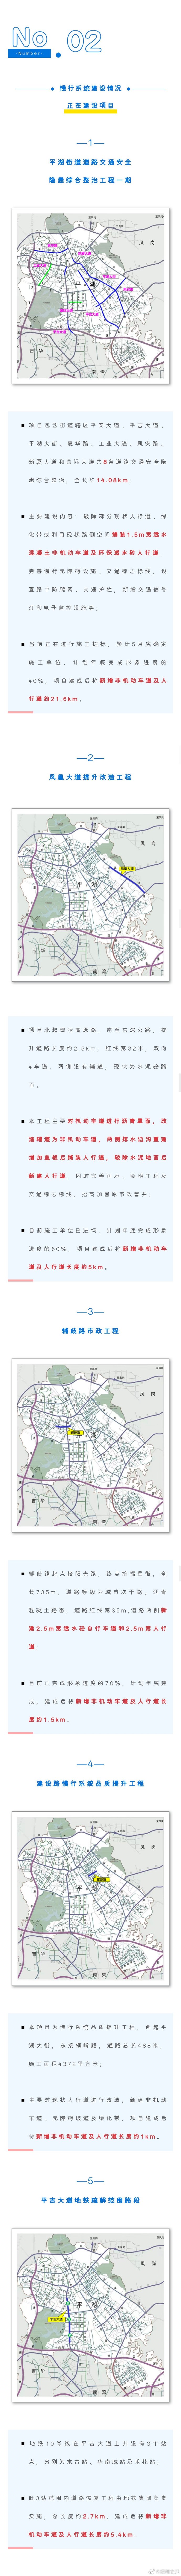 深圳平湖街道“机非分离”慢行系统建设最新进展